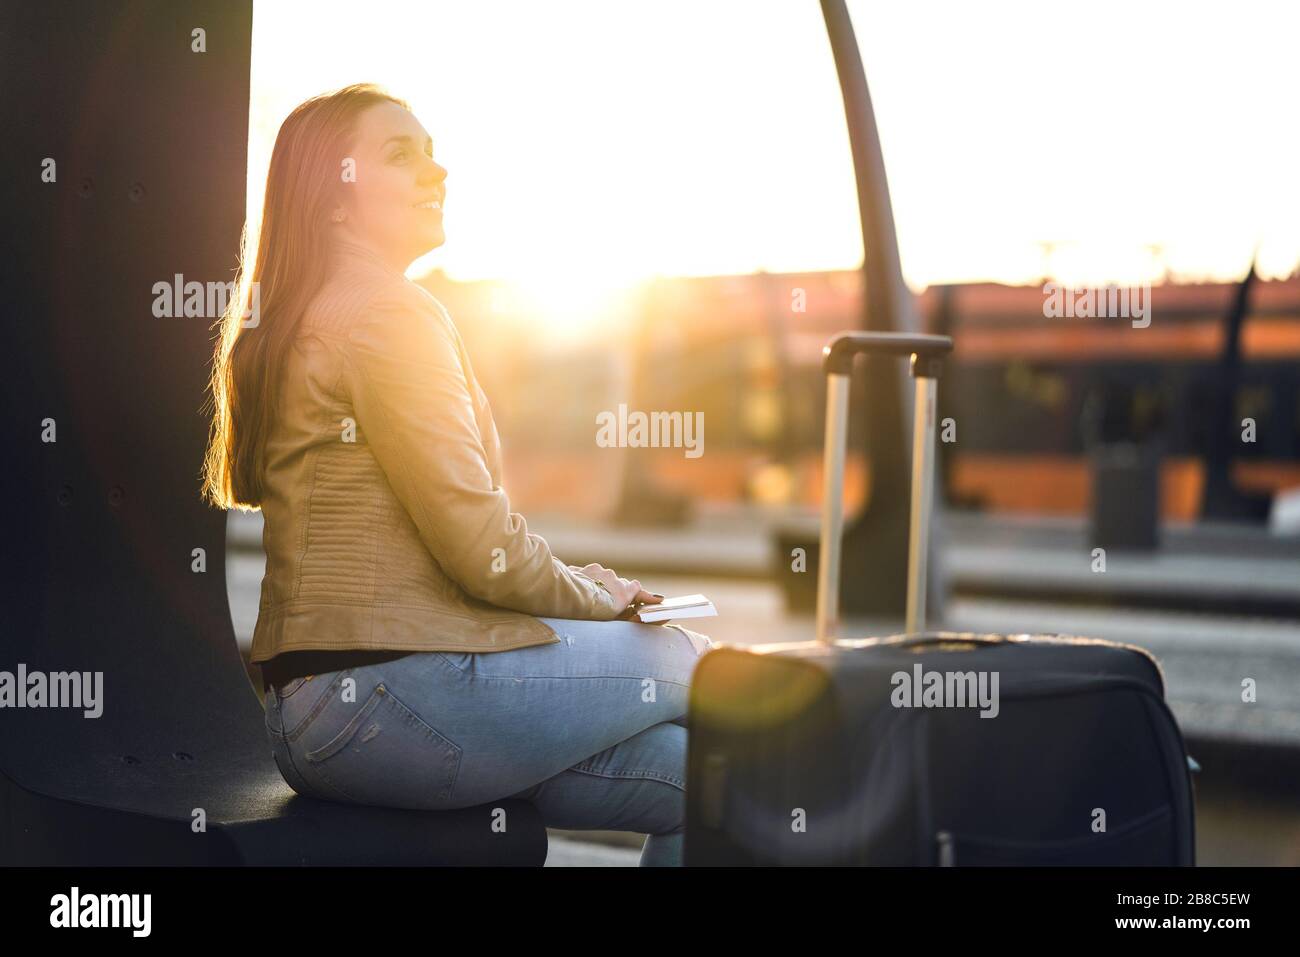 Glückliche Frau bei Sonnenuntergang wartet auf Zug. Dame sitzt mit Gepäck, Gepäck und Koffer auf der Plattform am Bahnhof. Reise- und Lifestyle-Konzept. Stockfoto